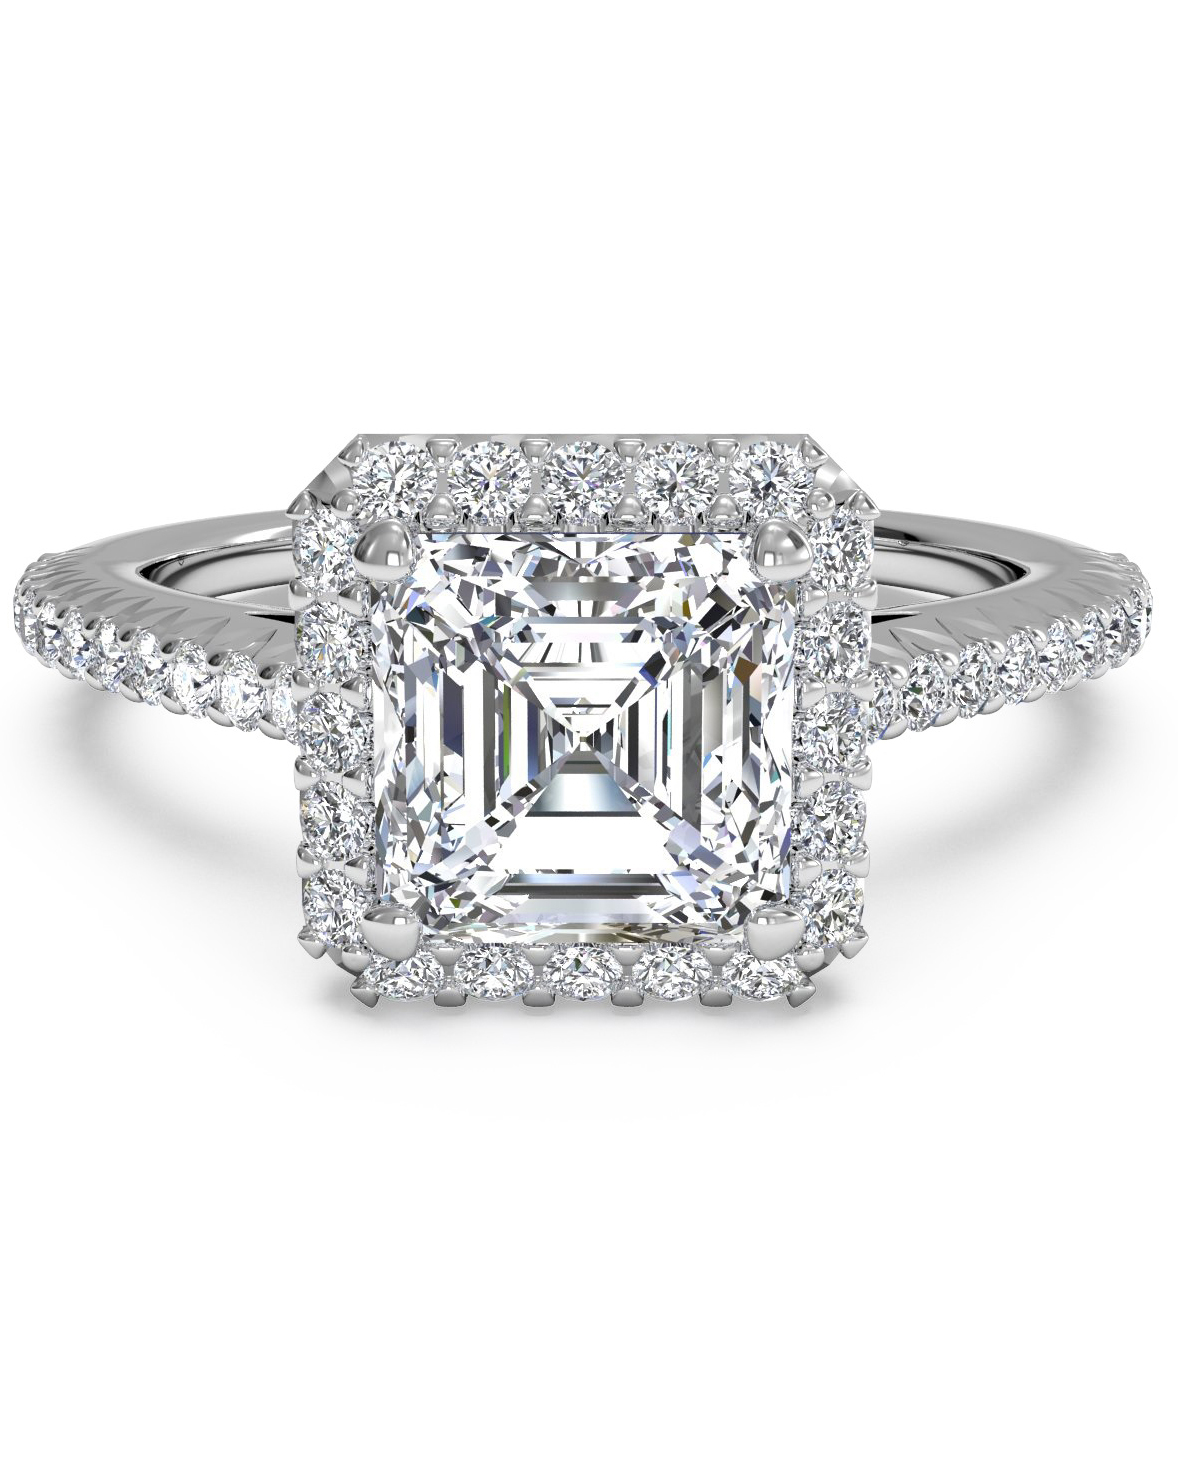 Asscher Cut Diamond Engagement Rings Martha Stewart Weddings